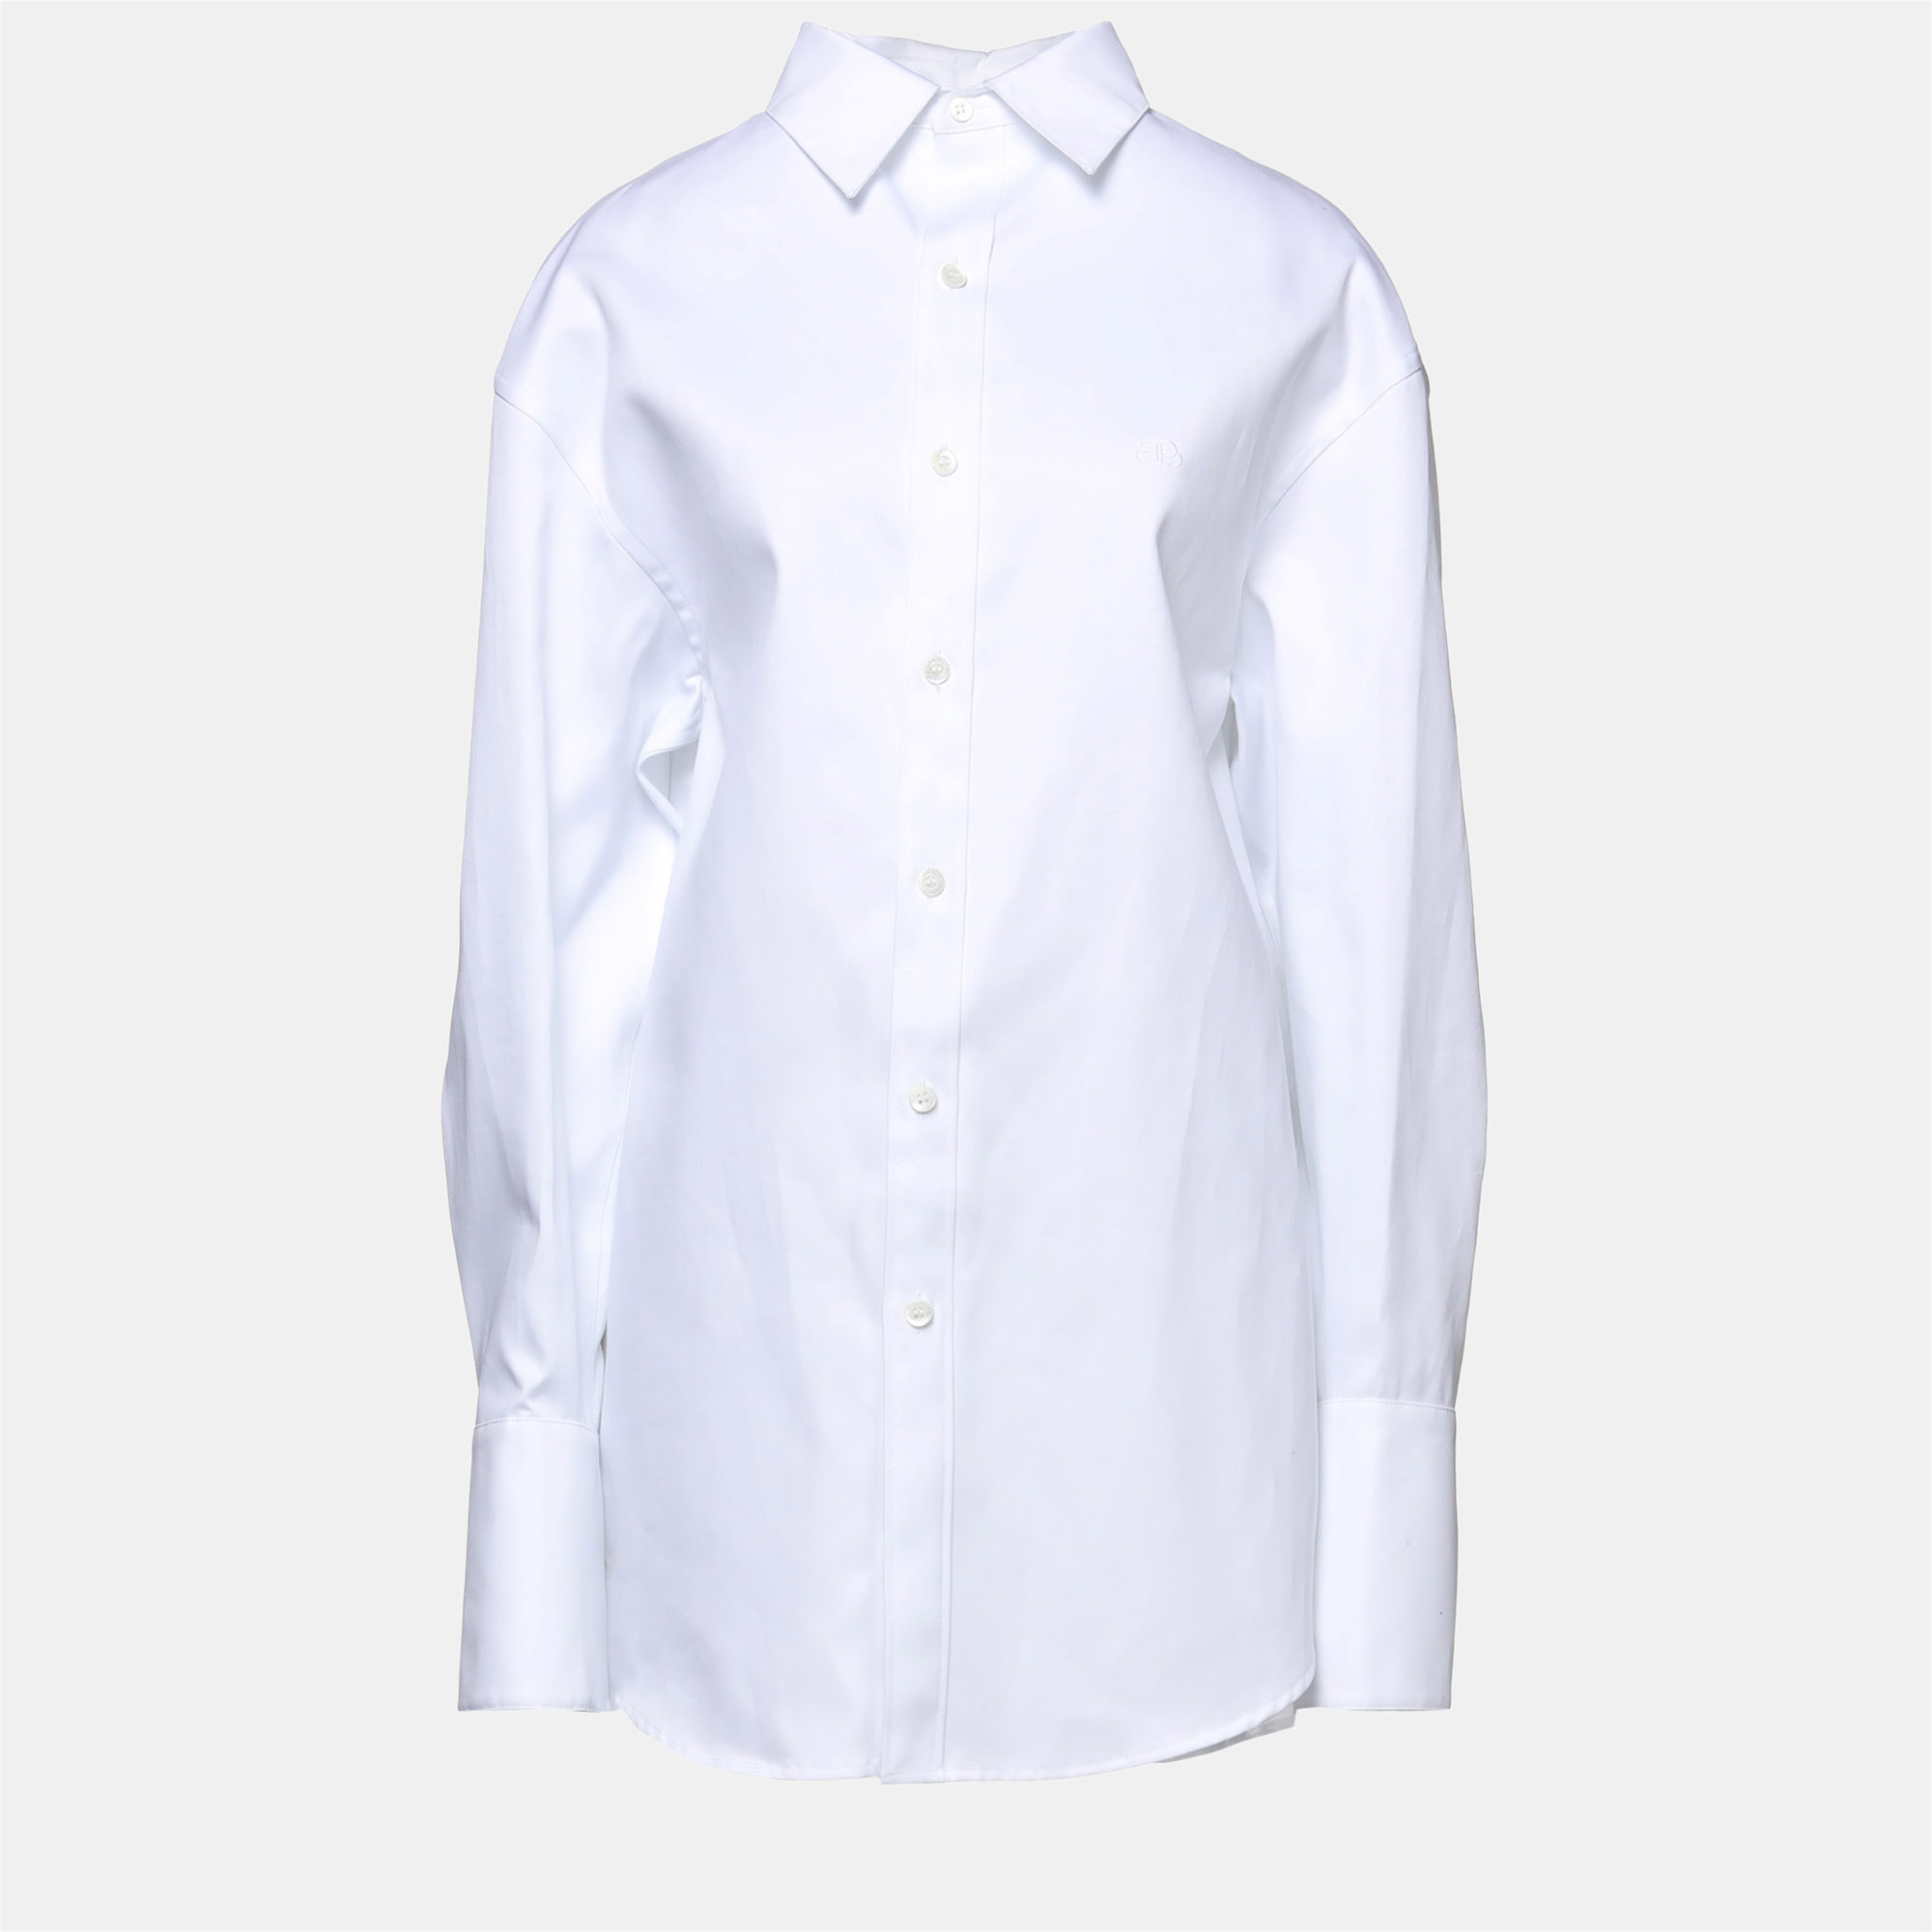 Balenciaga cotton shirt 38